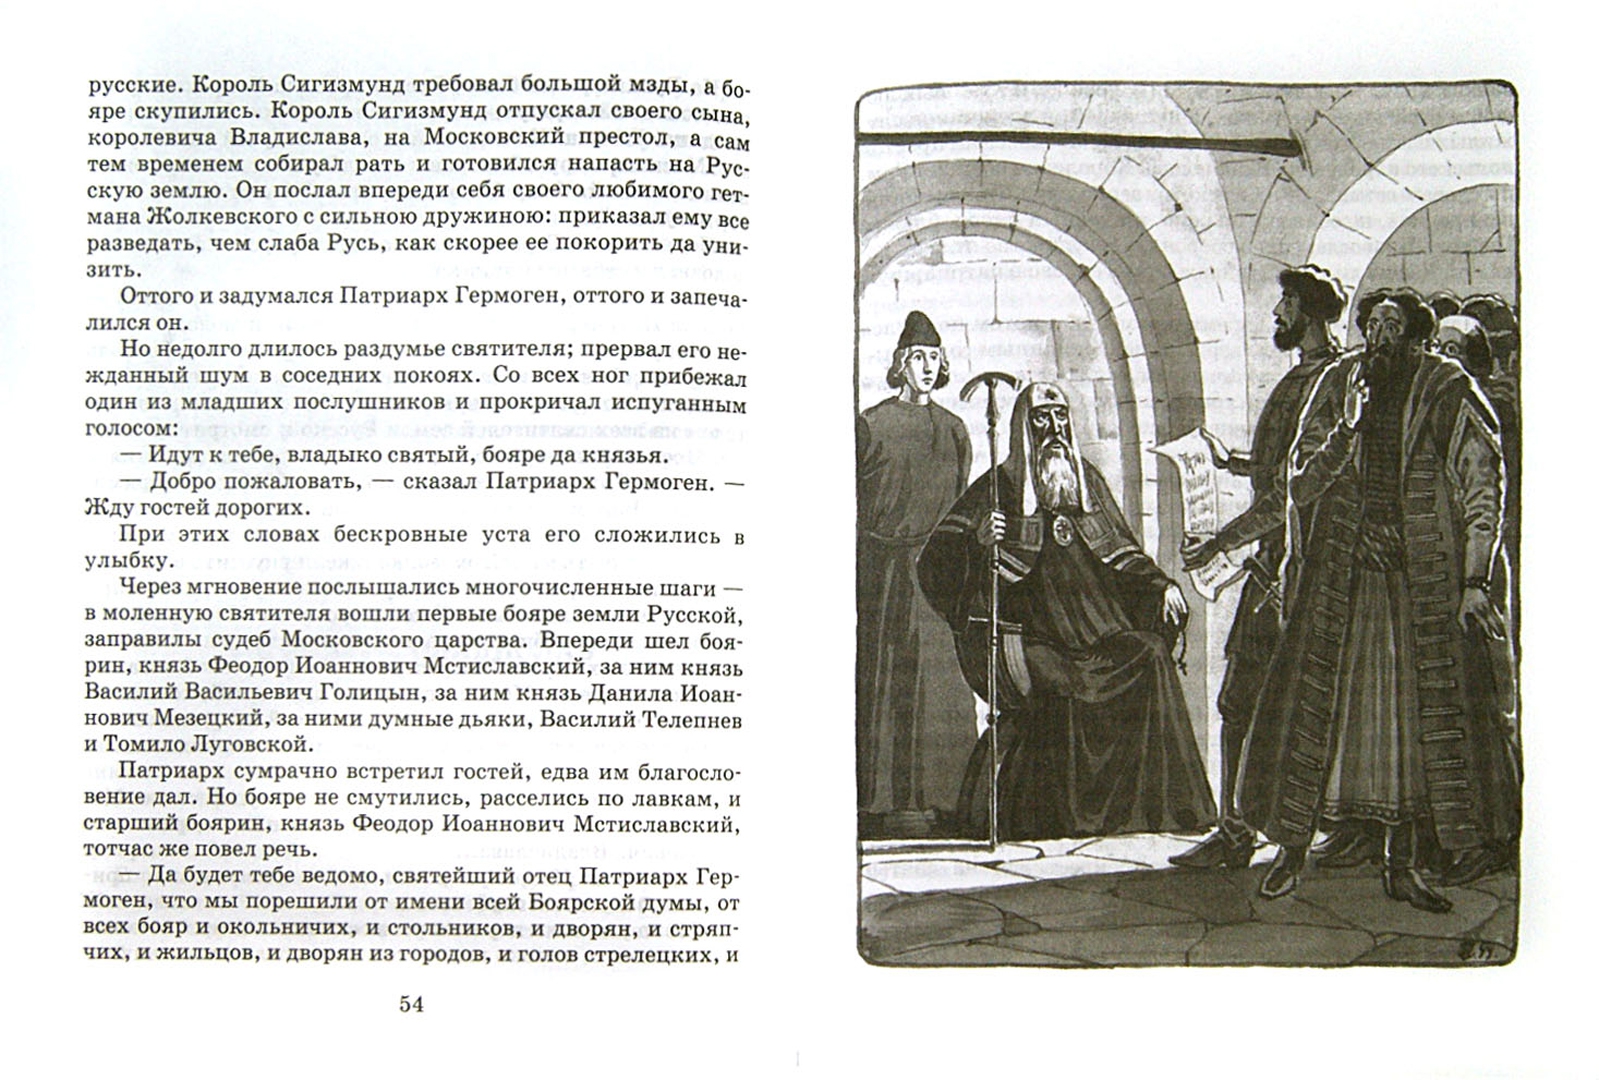 Иллюстрация 1 из 4 для Великий страдалец. Повесть о Патриархе Гермогене - В. Лебедев | Лабиринт - книги. Источник: Лабиринт